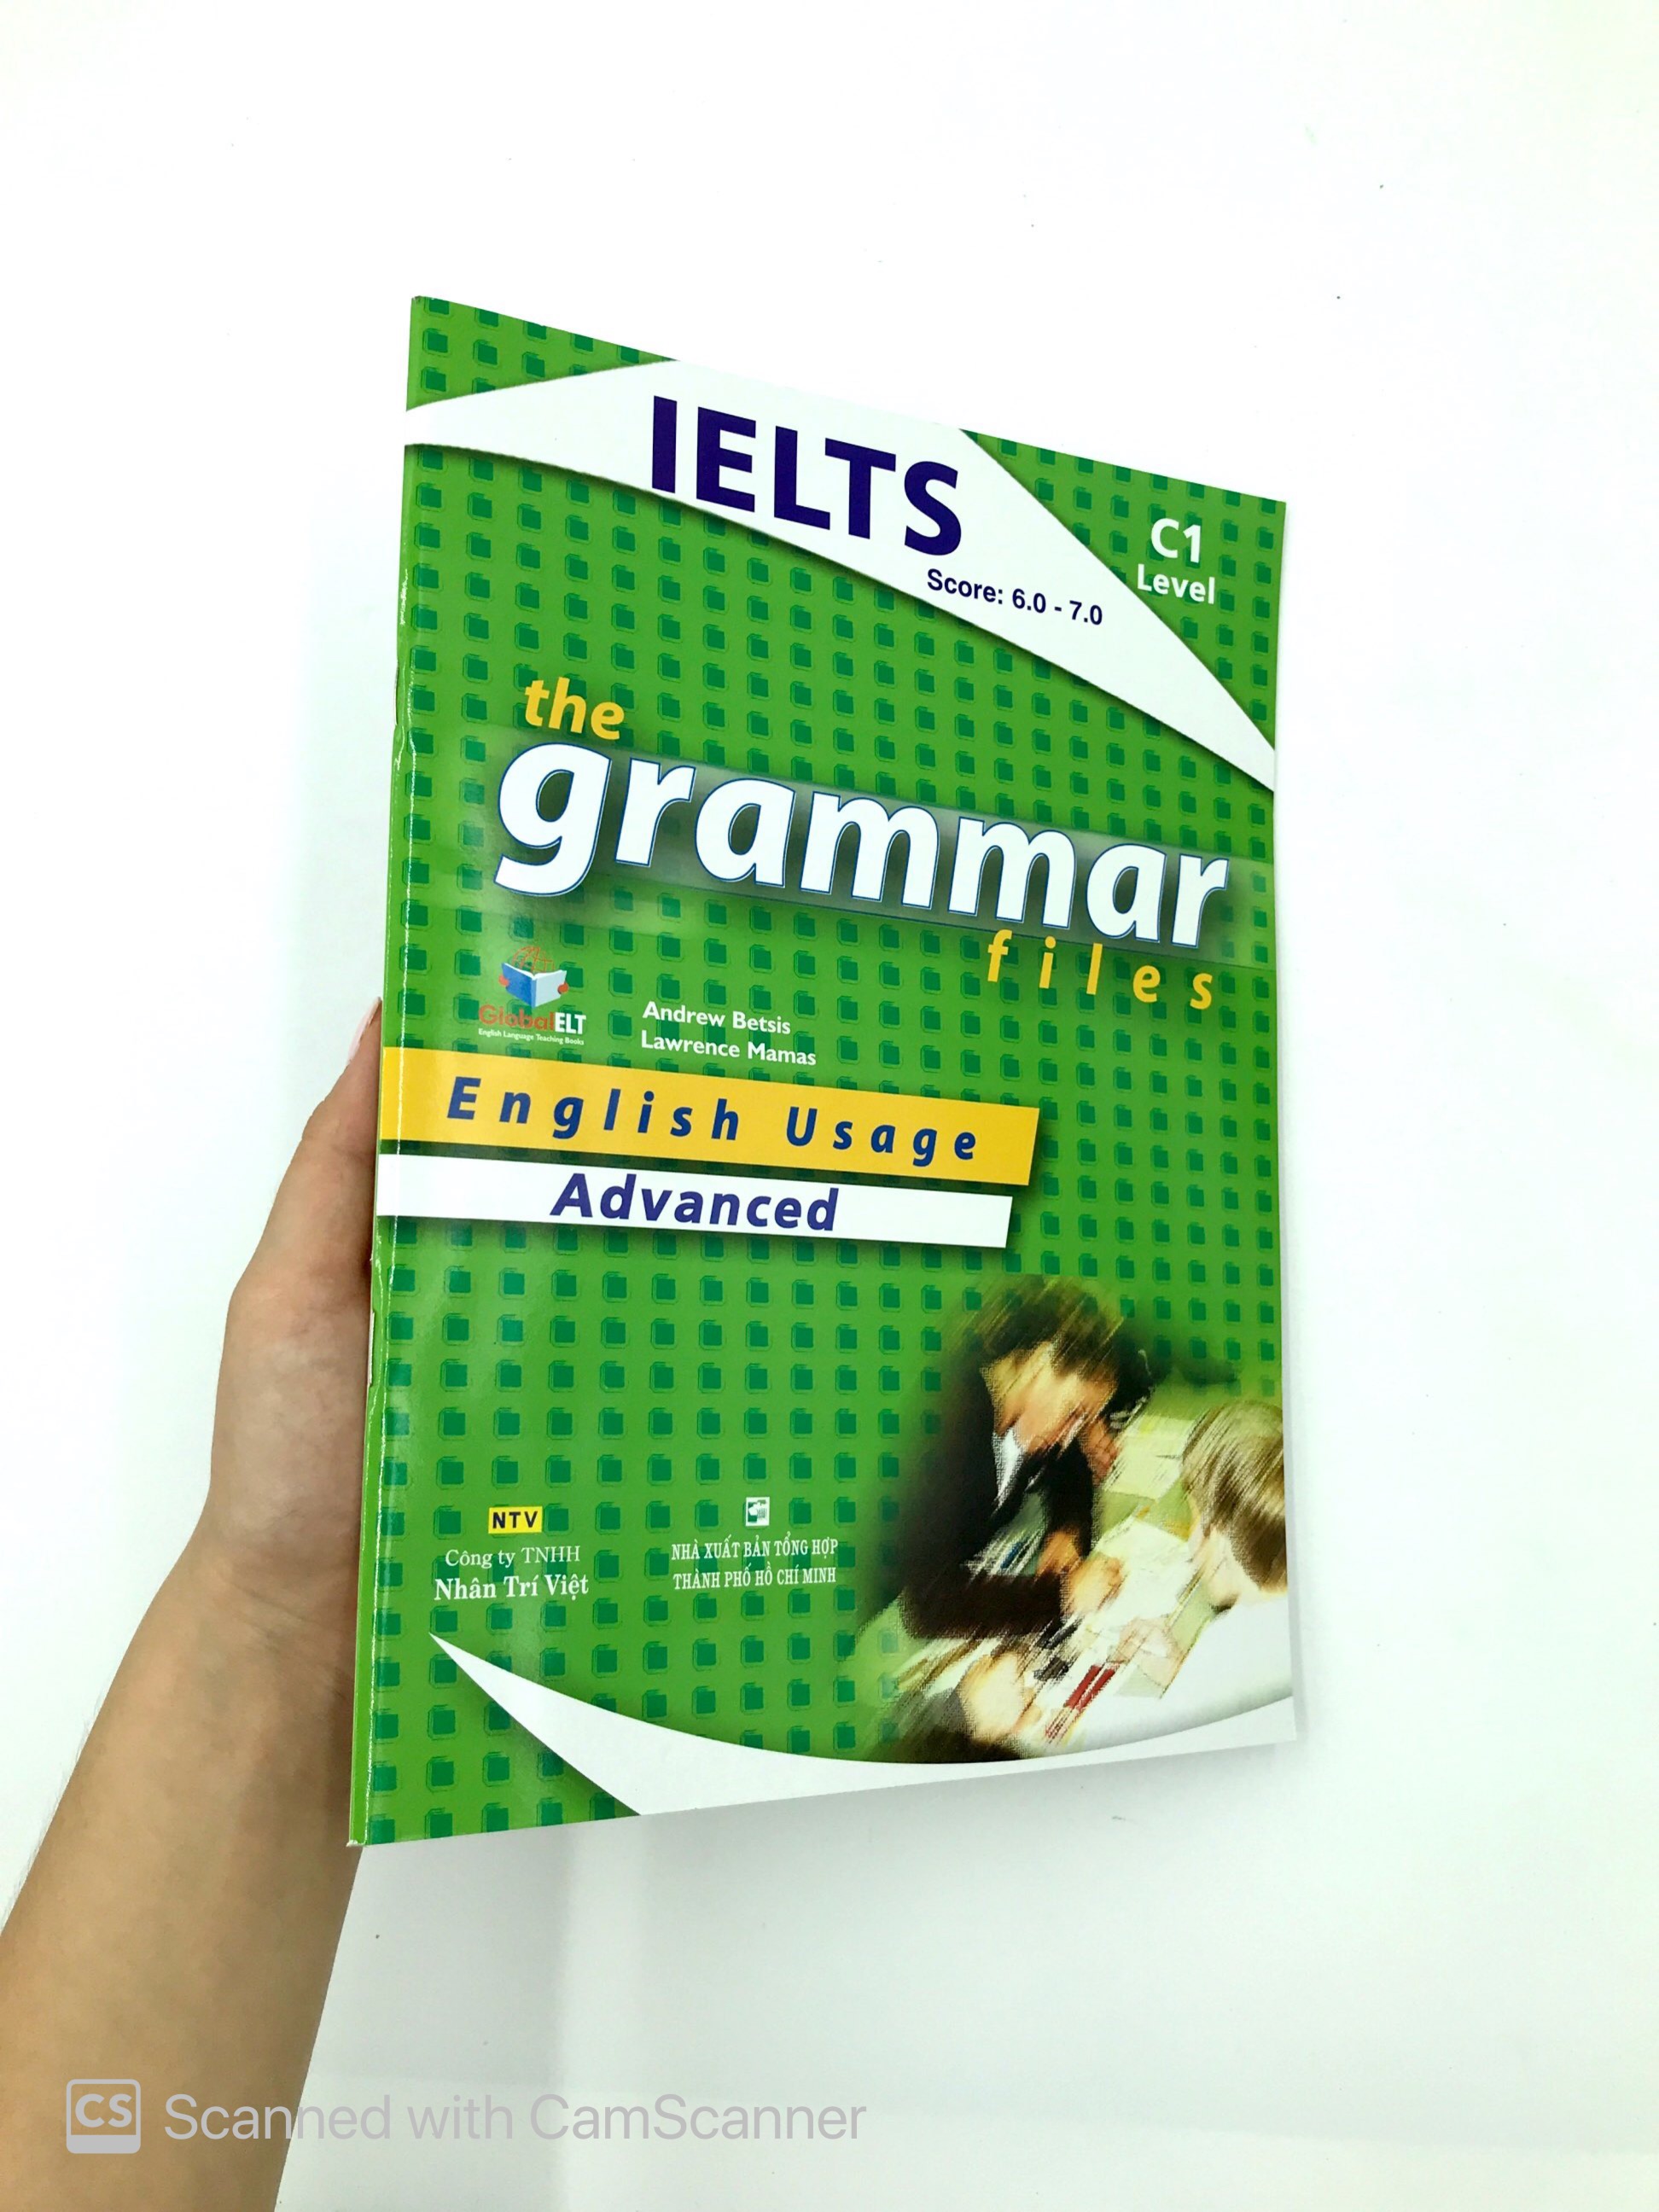 IELTS The Grammar Files C1 - Advanced 2018 PDF